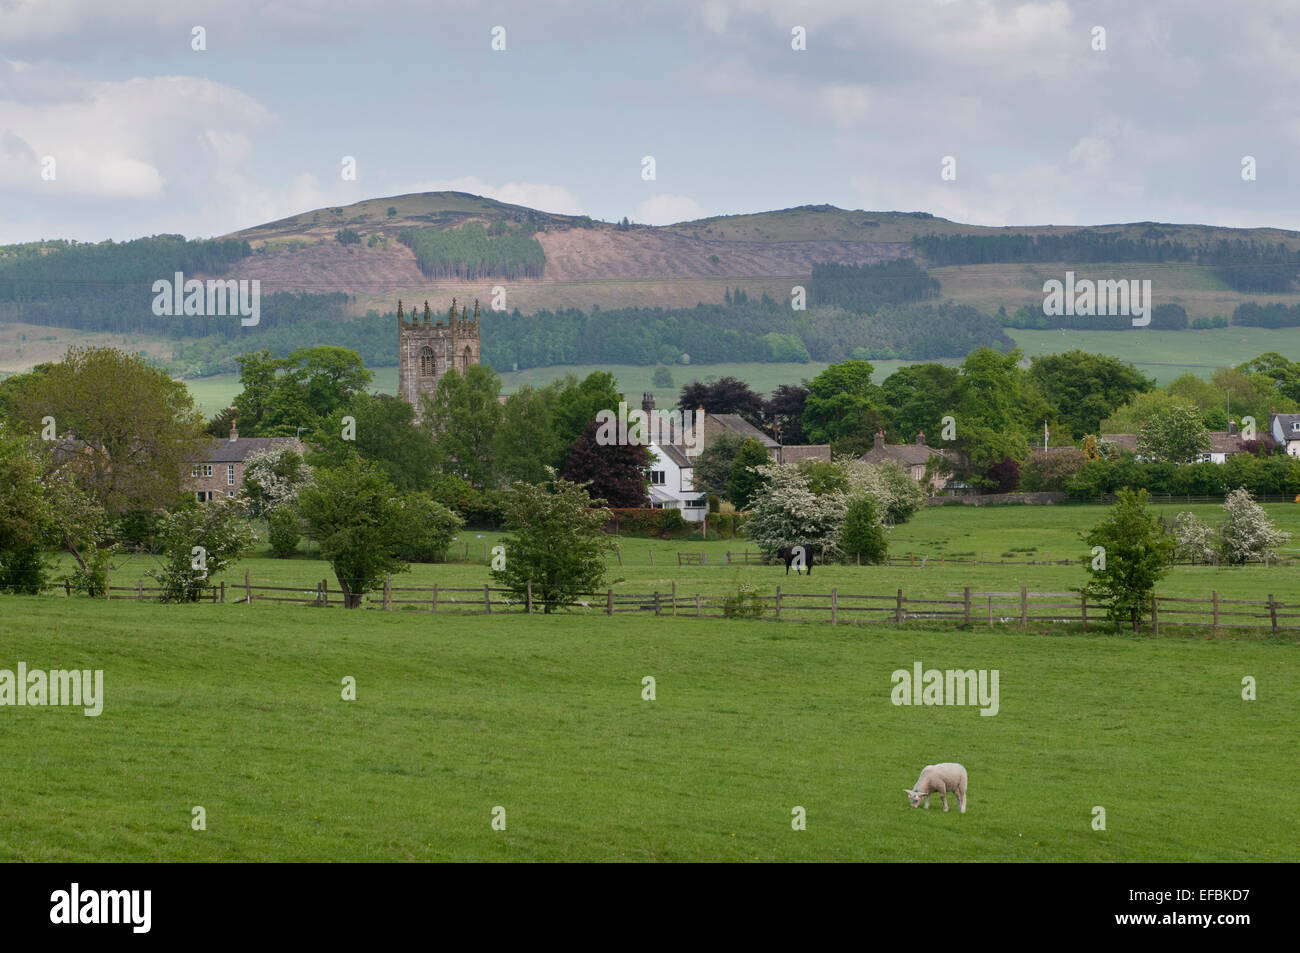 Einen malerischen Blick auf Ackerland Felder in Richtung Kirche & Häuser in einem ruhigen Dorf von Skipton & Rolling Hills - North Yorkshire, England, UK. Stockfoto